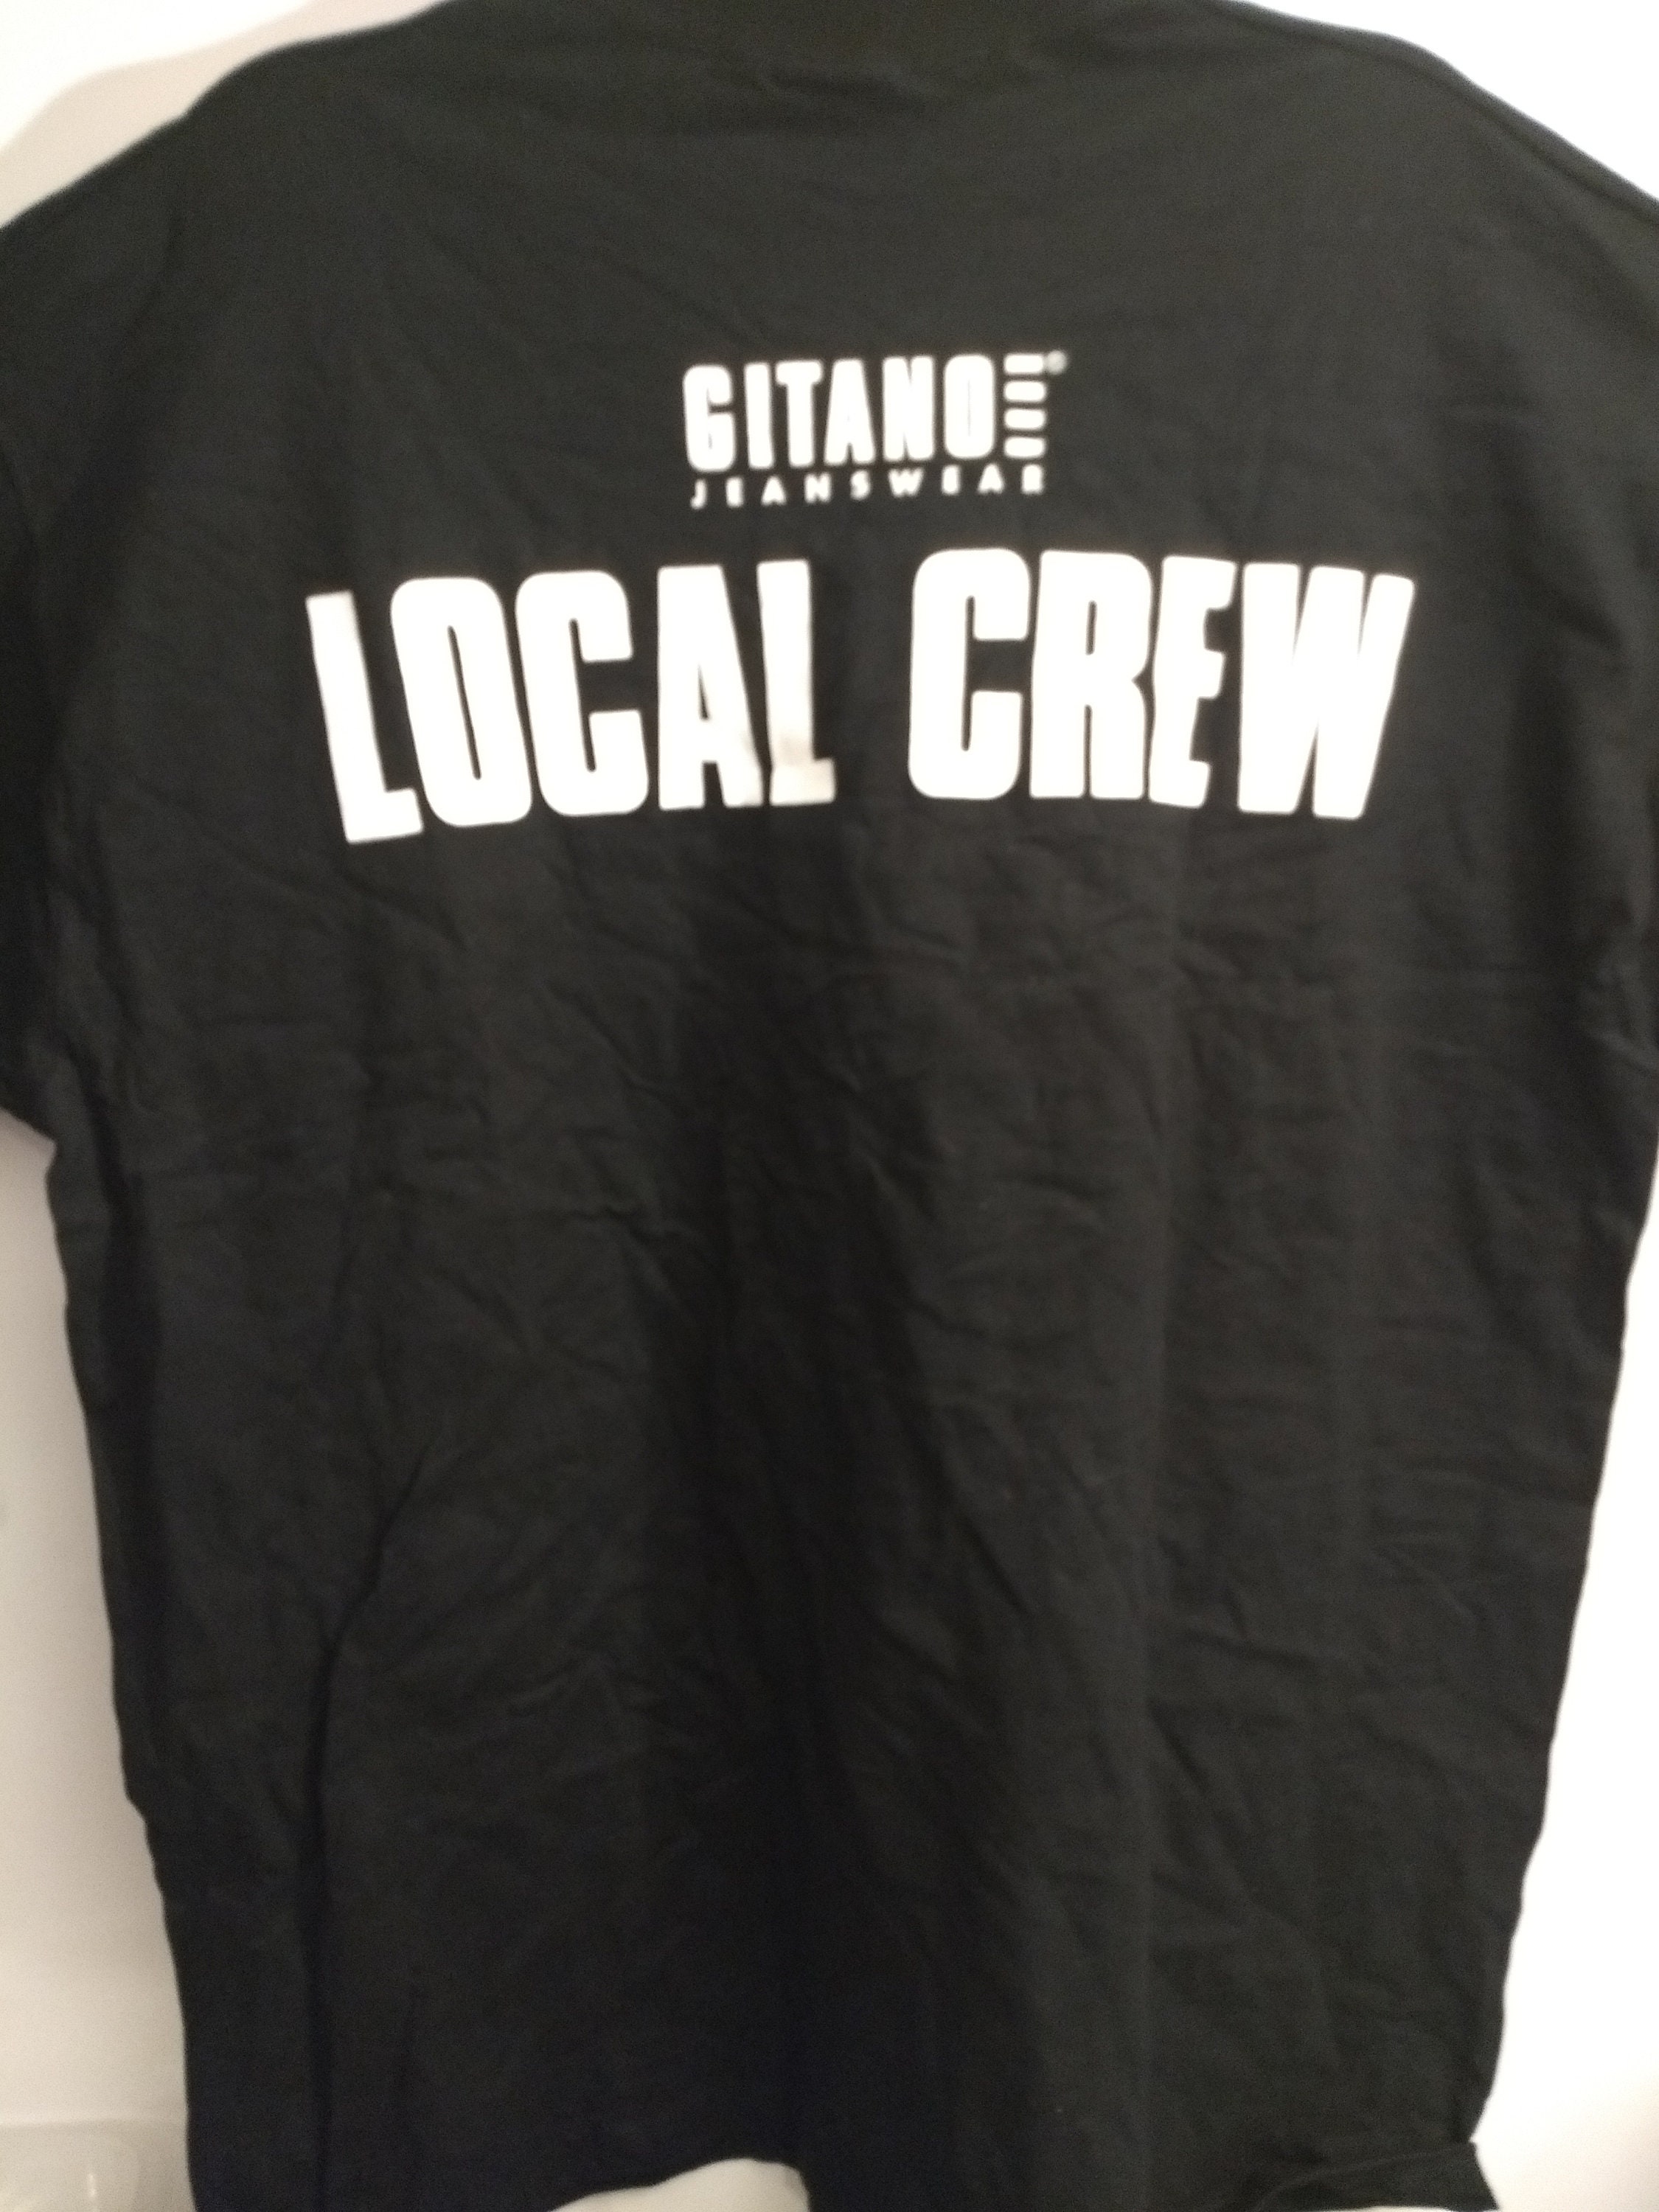 Shania Twain Concert Tour Tech CrewT Shirt! Authentic Vintage 98 ...